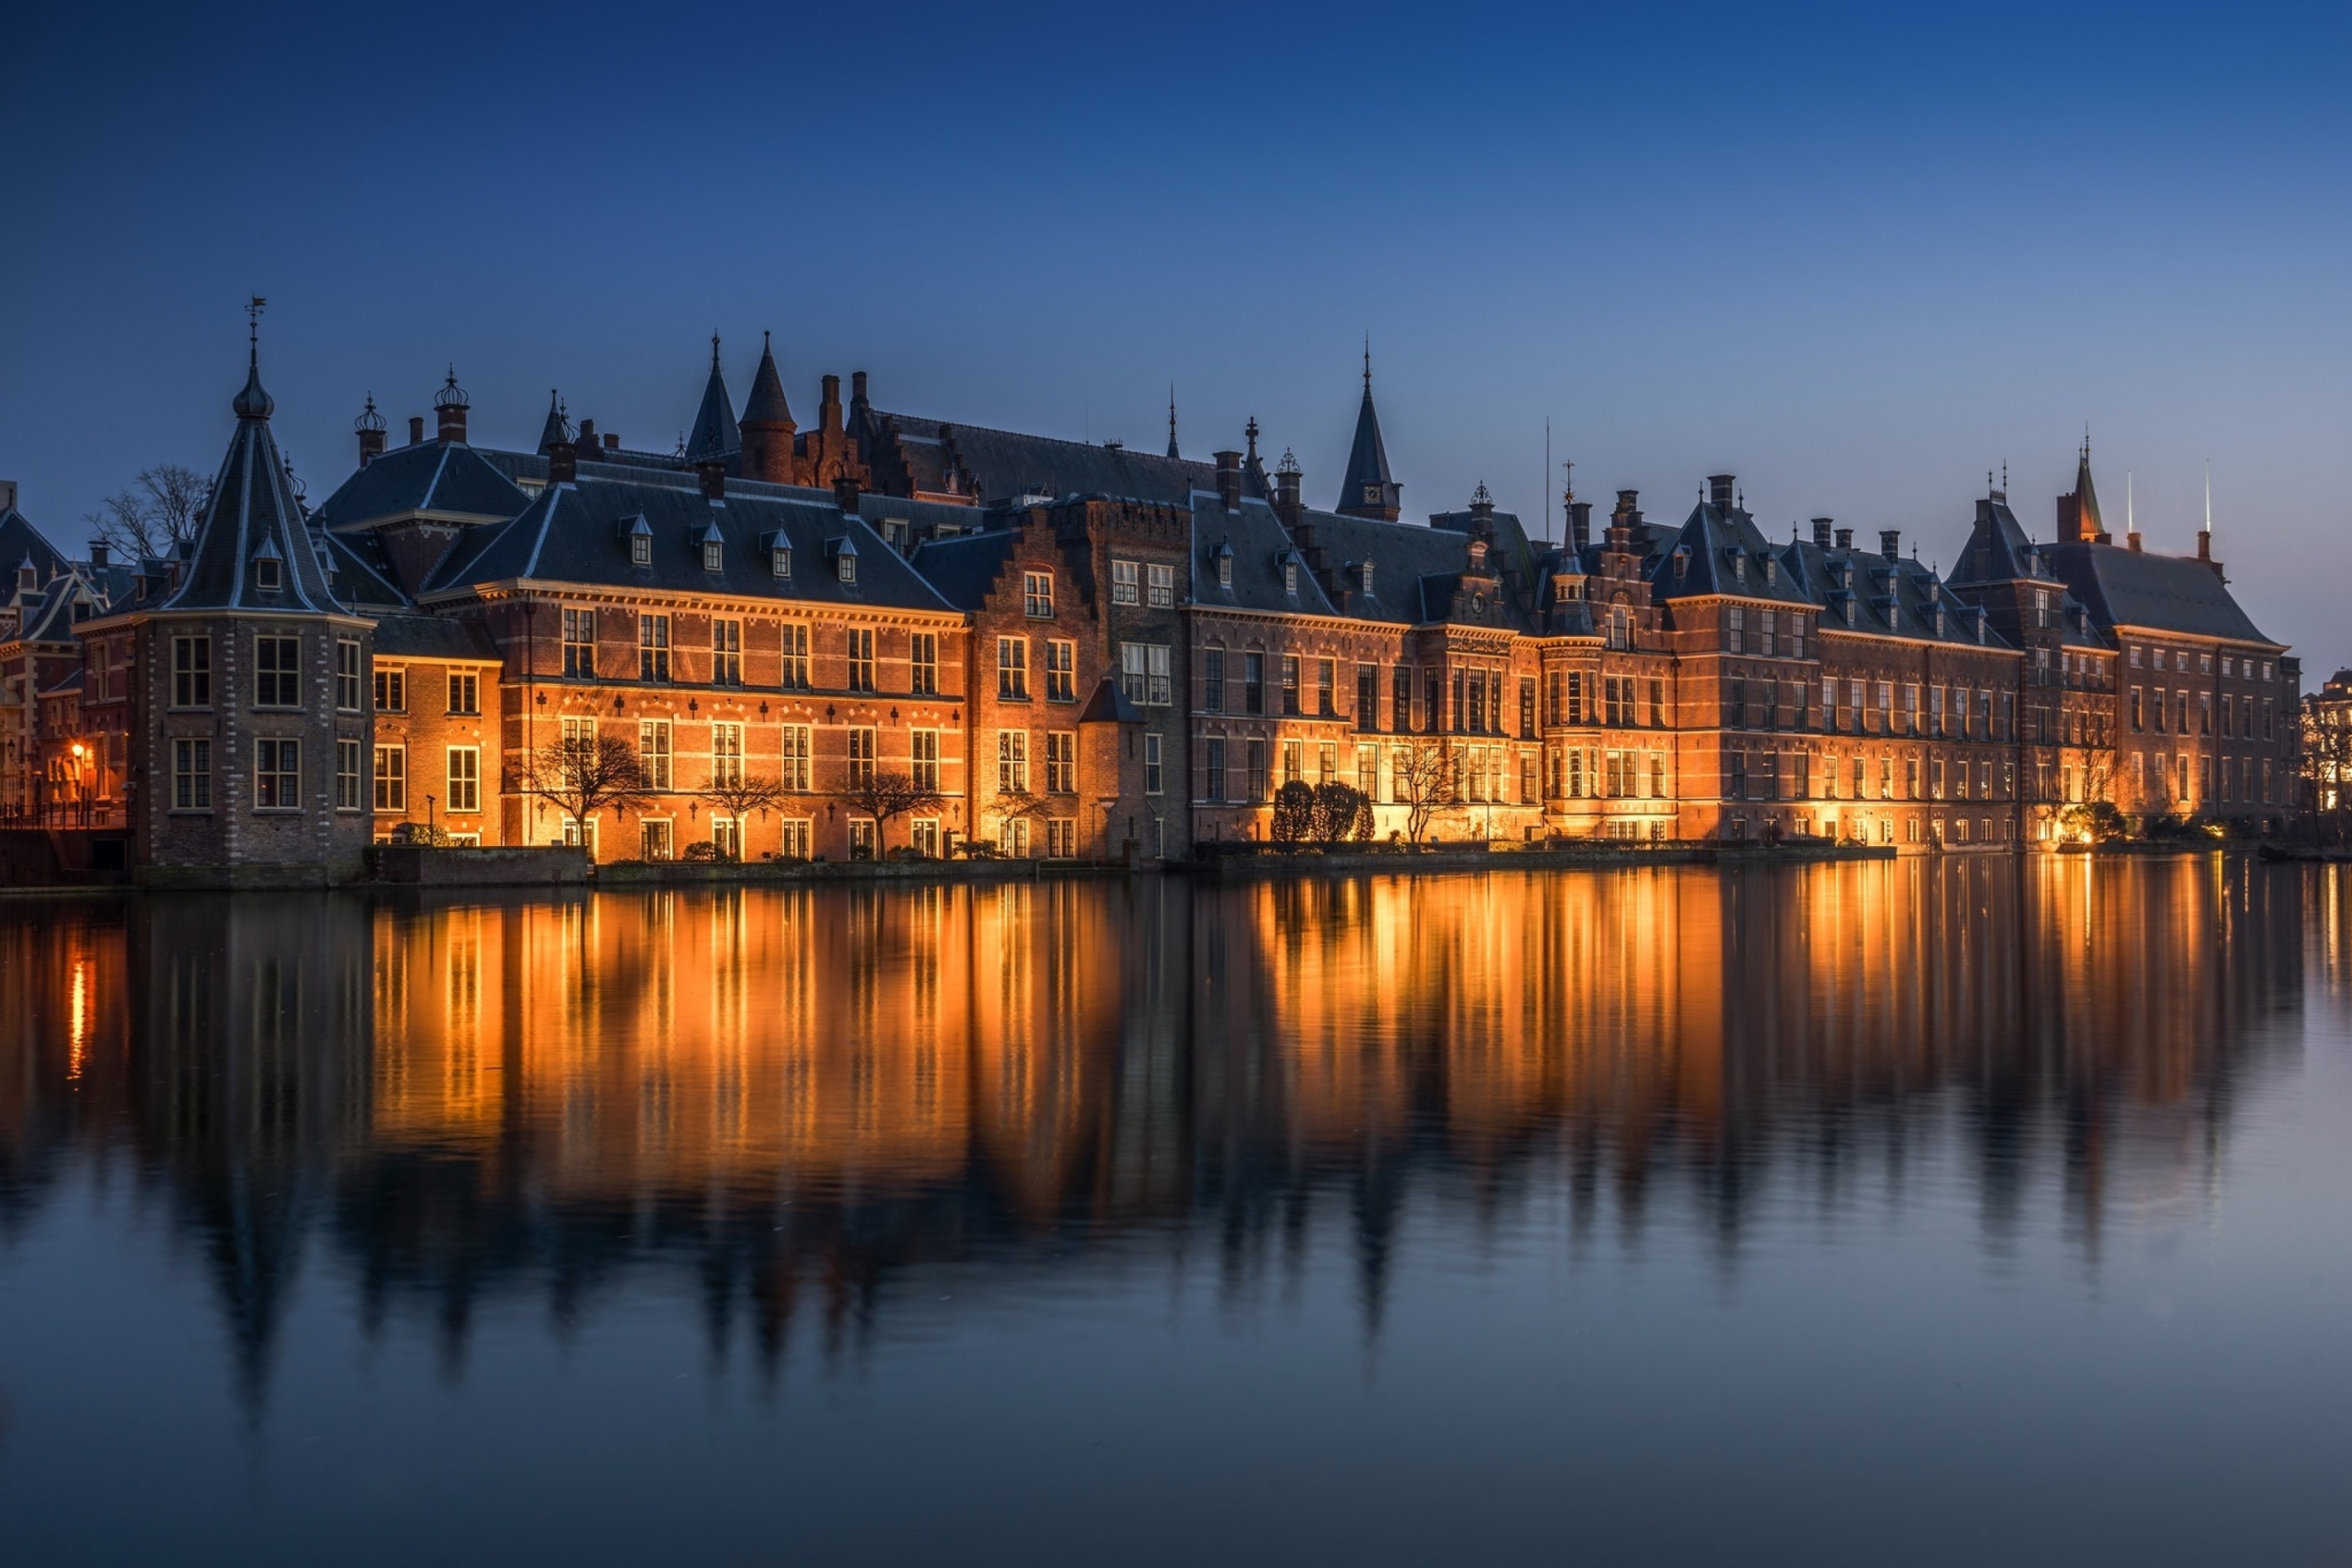 Binnenhof in Hague screenshot #1 2880x1920